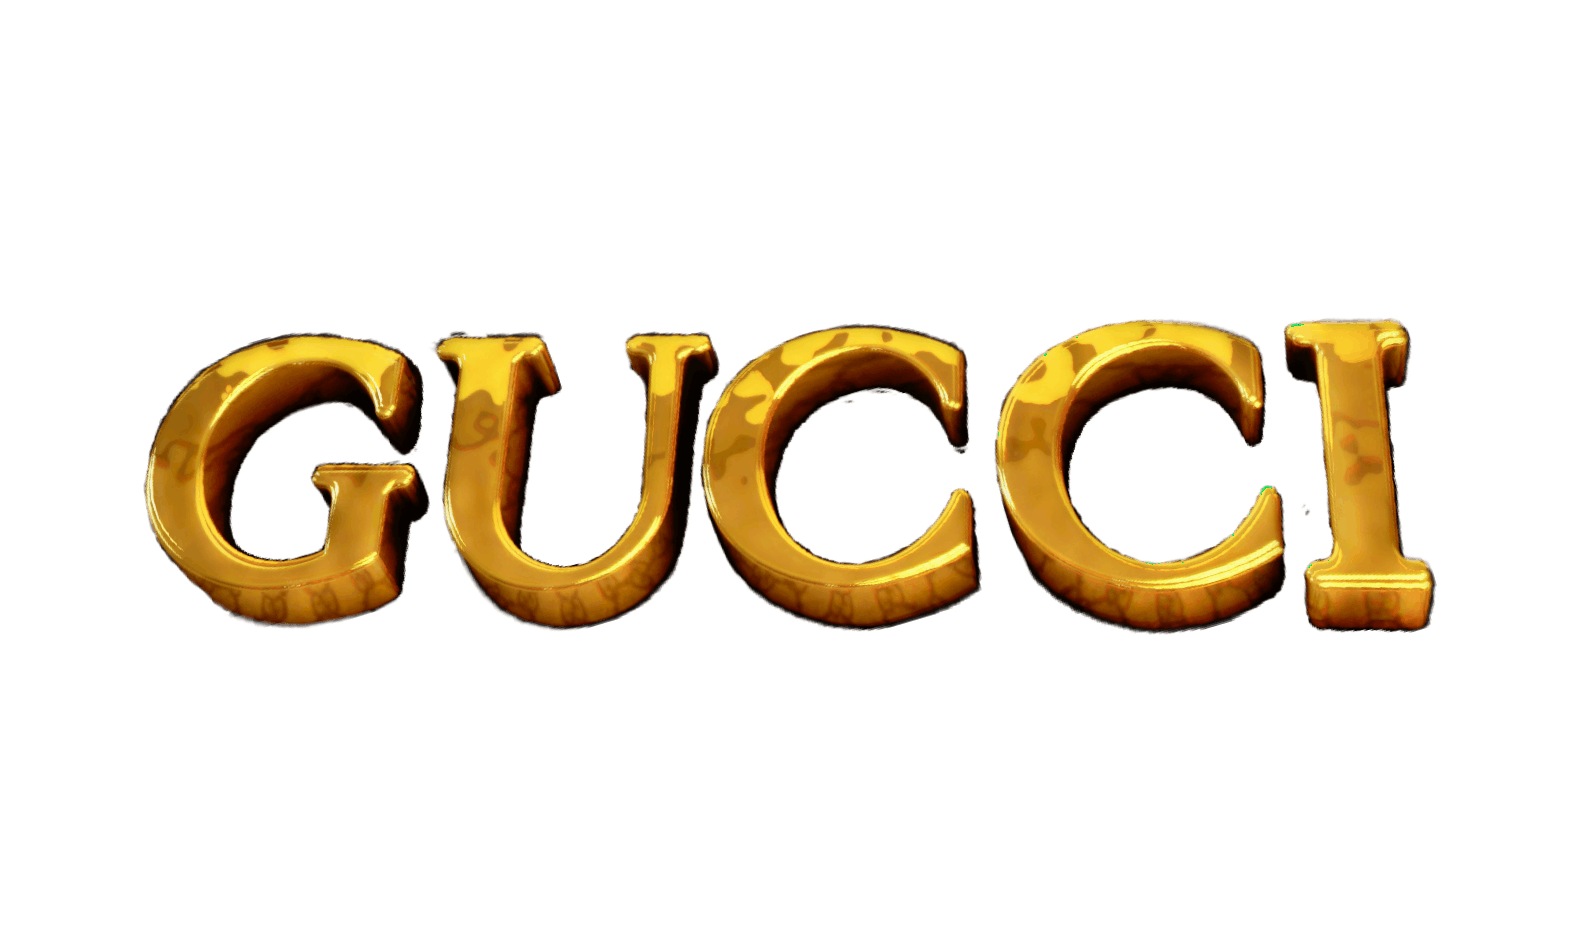 Gucci Gold Logo Free PNG Image | PNG Arts